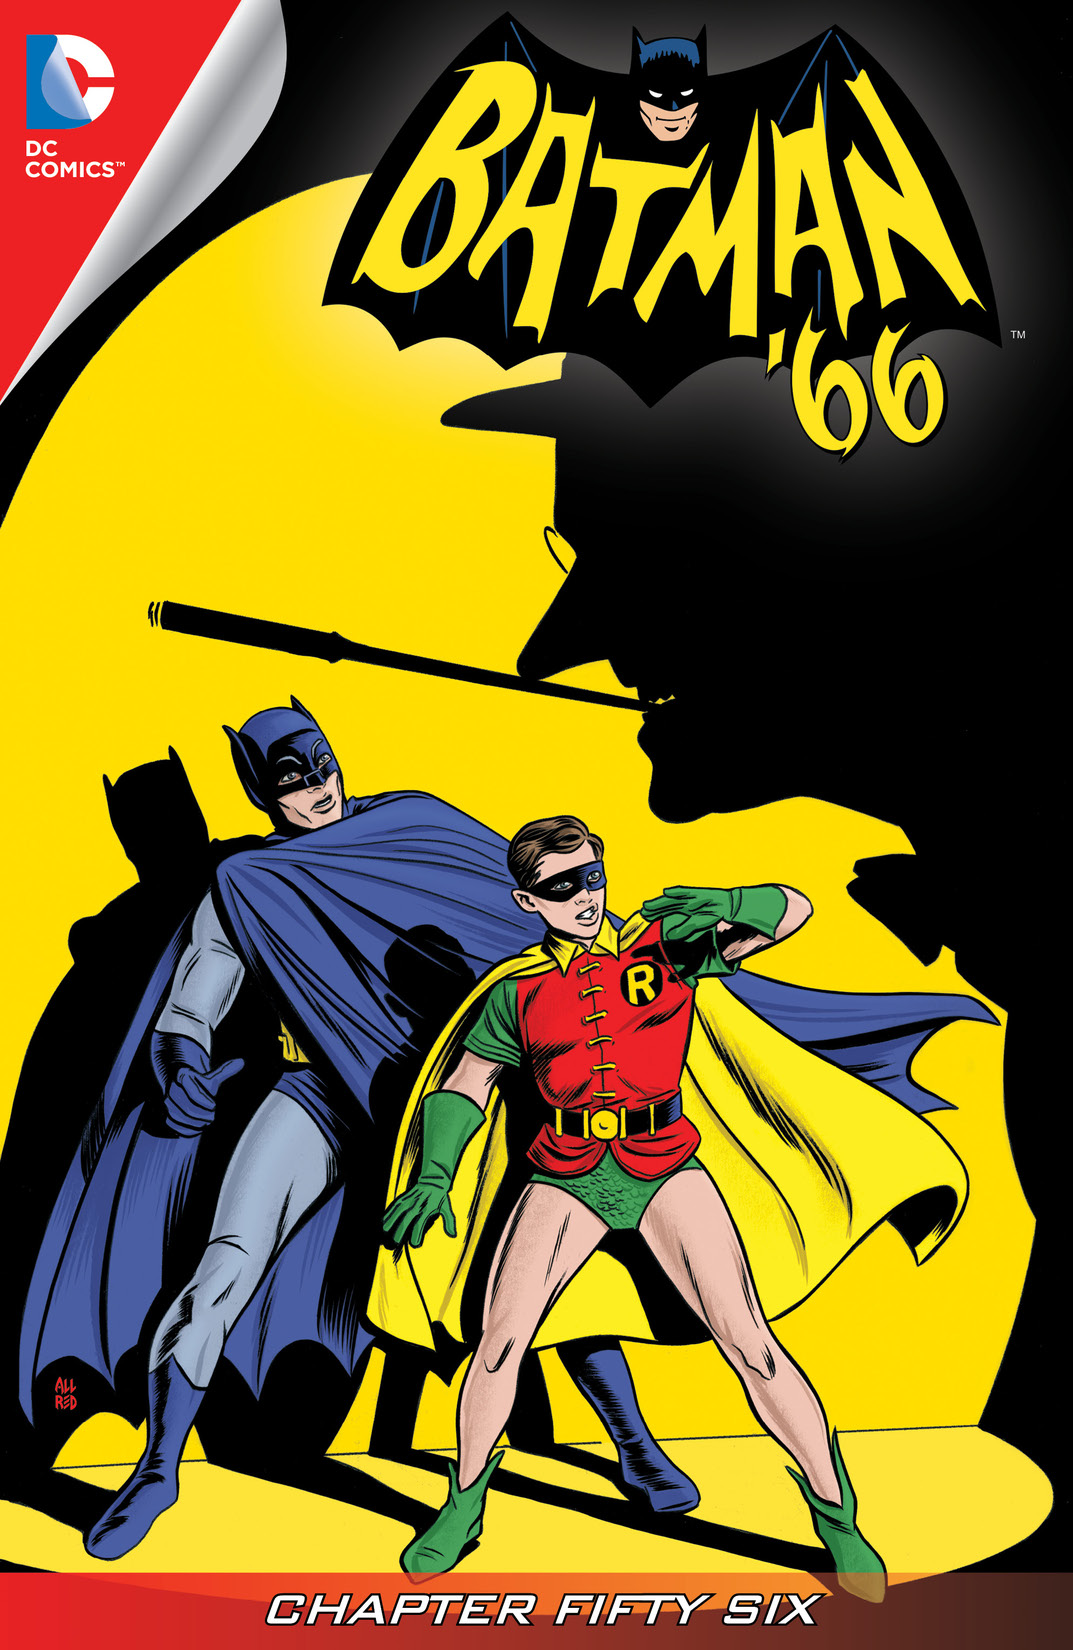 Batman '66 #56 preview images